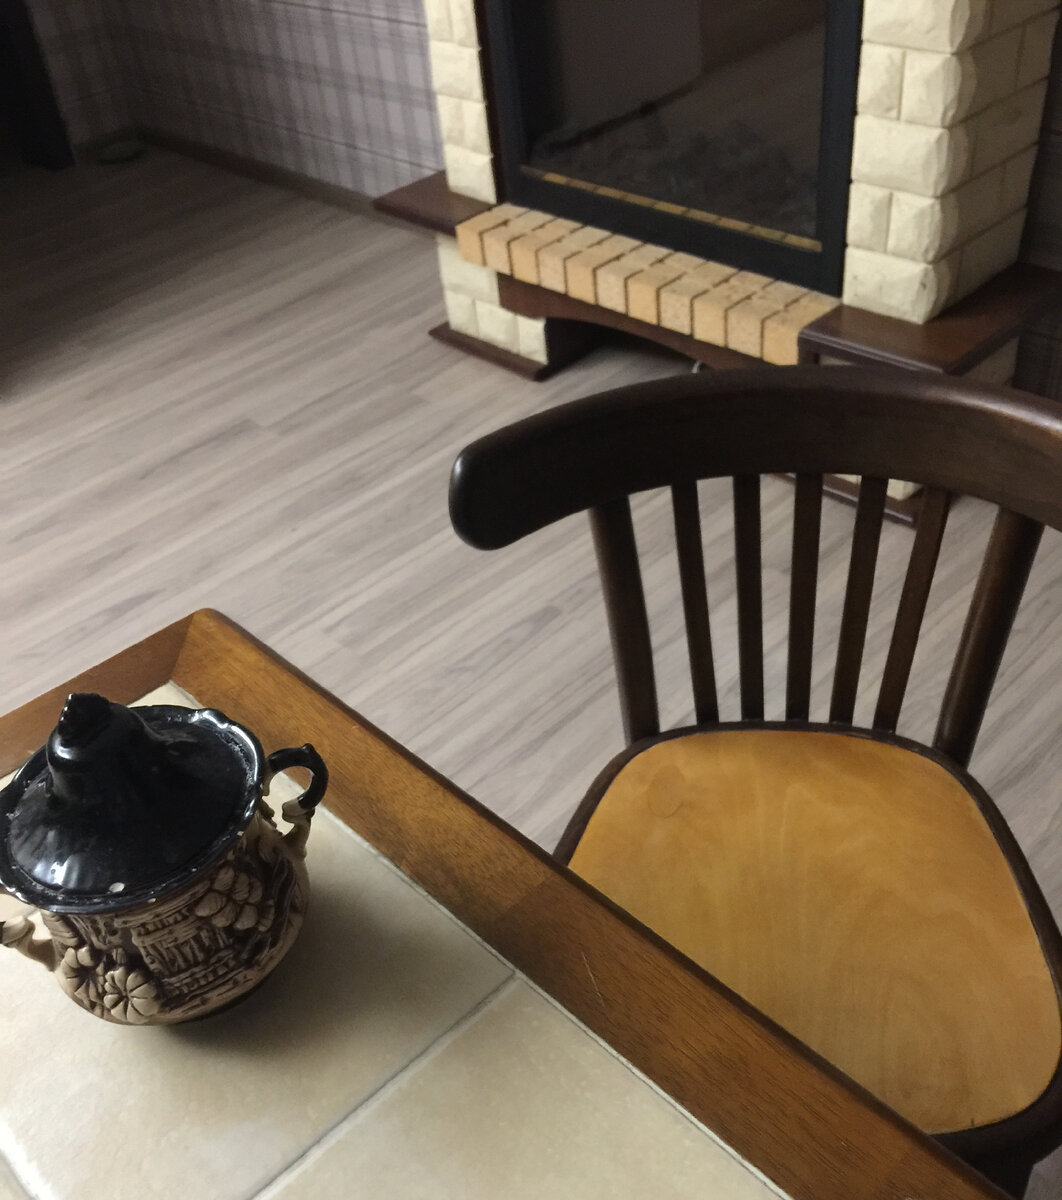 Фото автора. стул гармонирует в цветовой гамме с камином и столом.